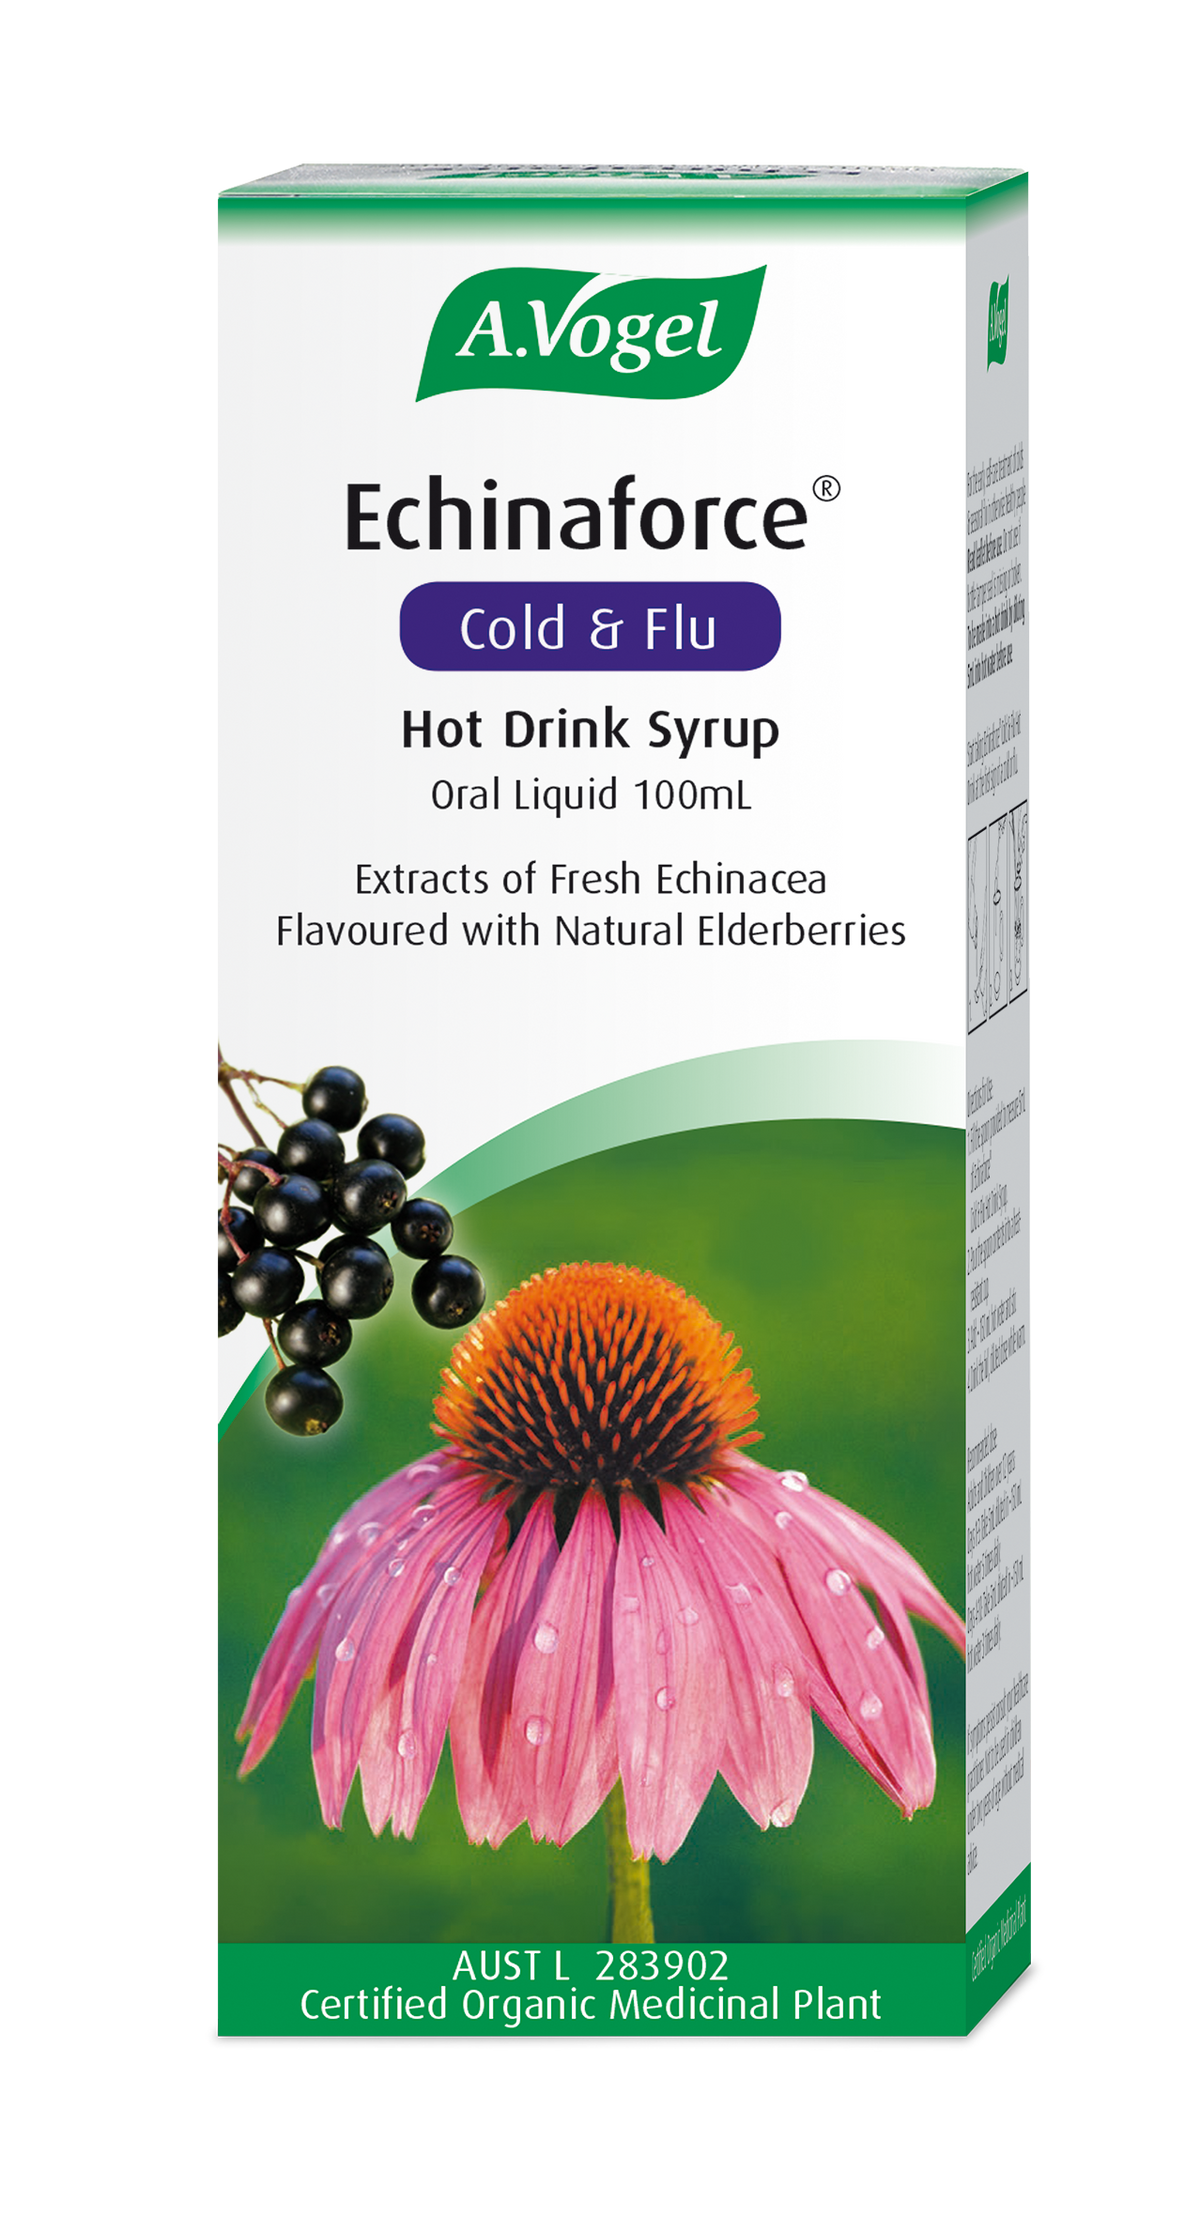 A.Vogel Echinaforce Cold & Flu Hot Drink